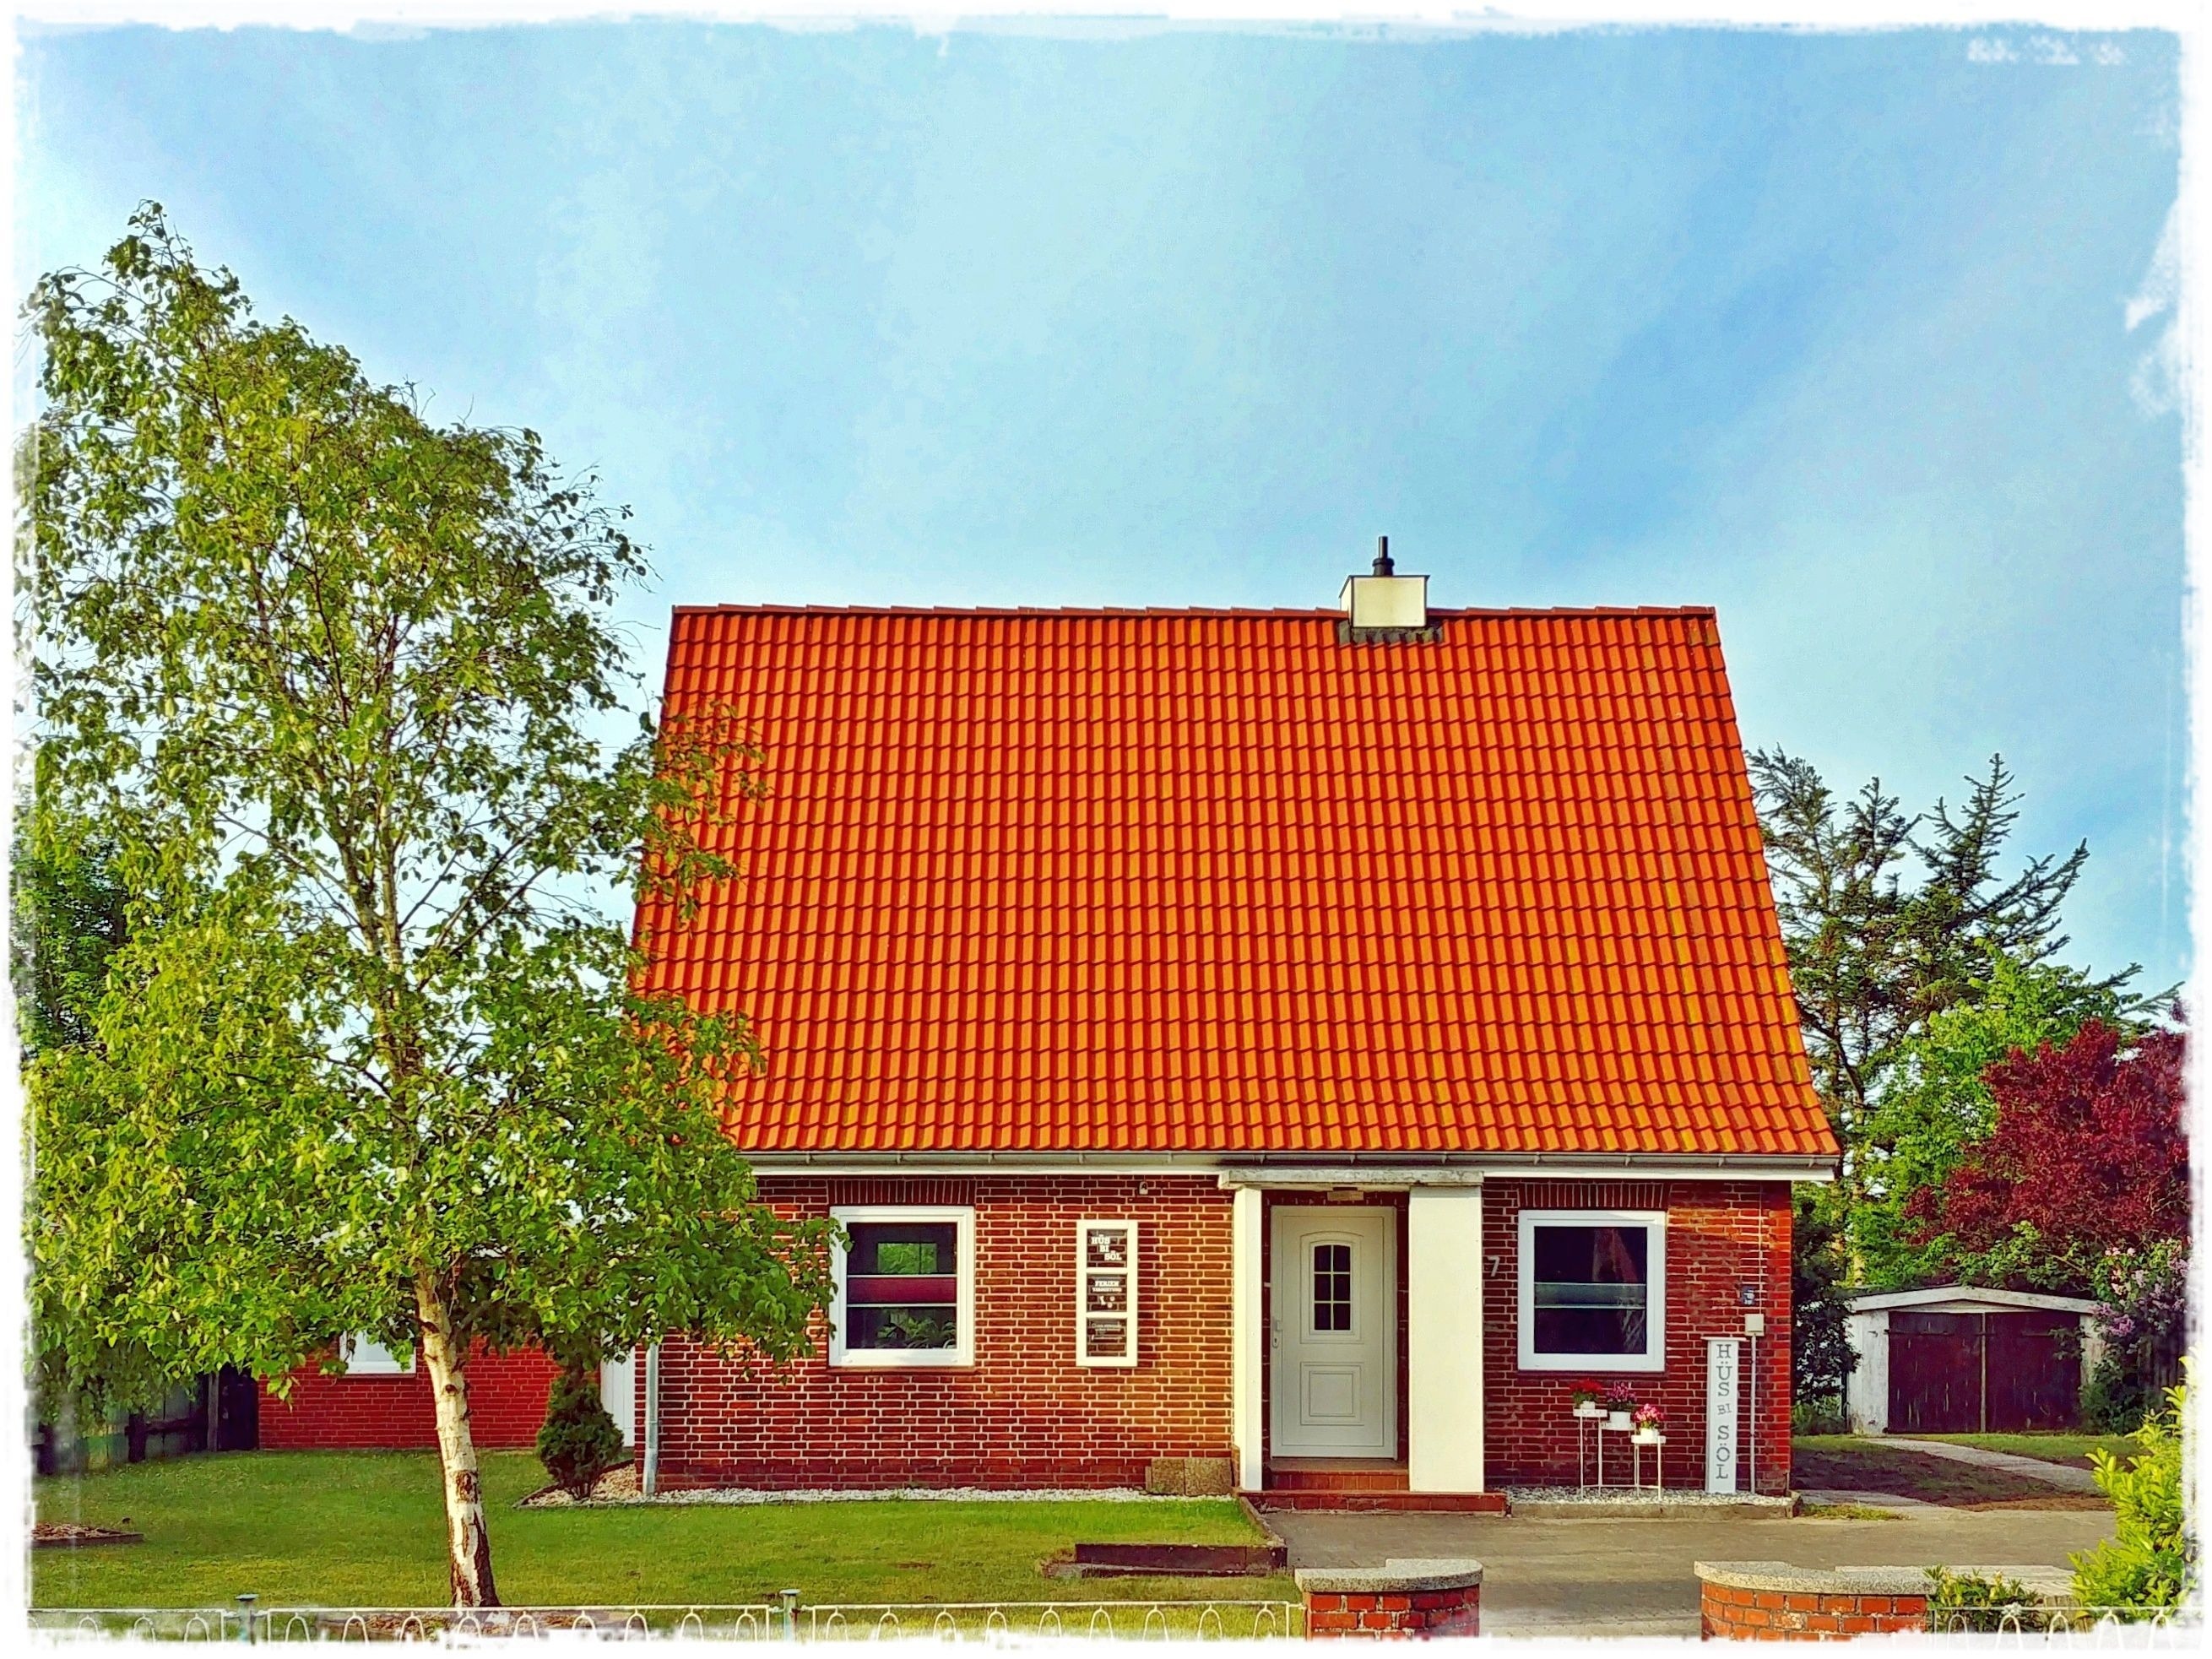 Hüs bi Söl - Haus bei Sylt Ferienhaus in Schleswig Holstein